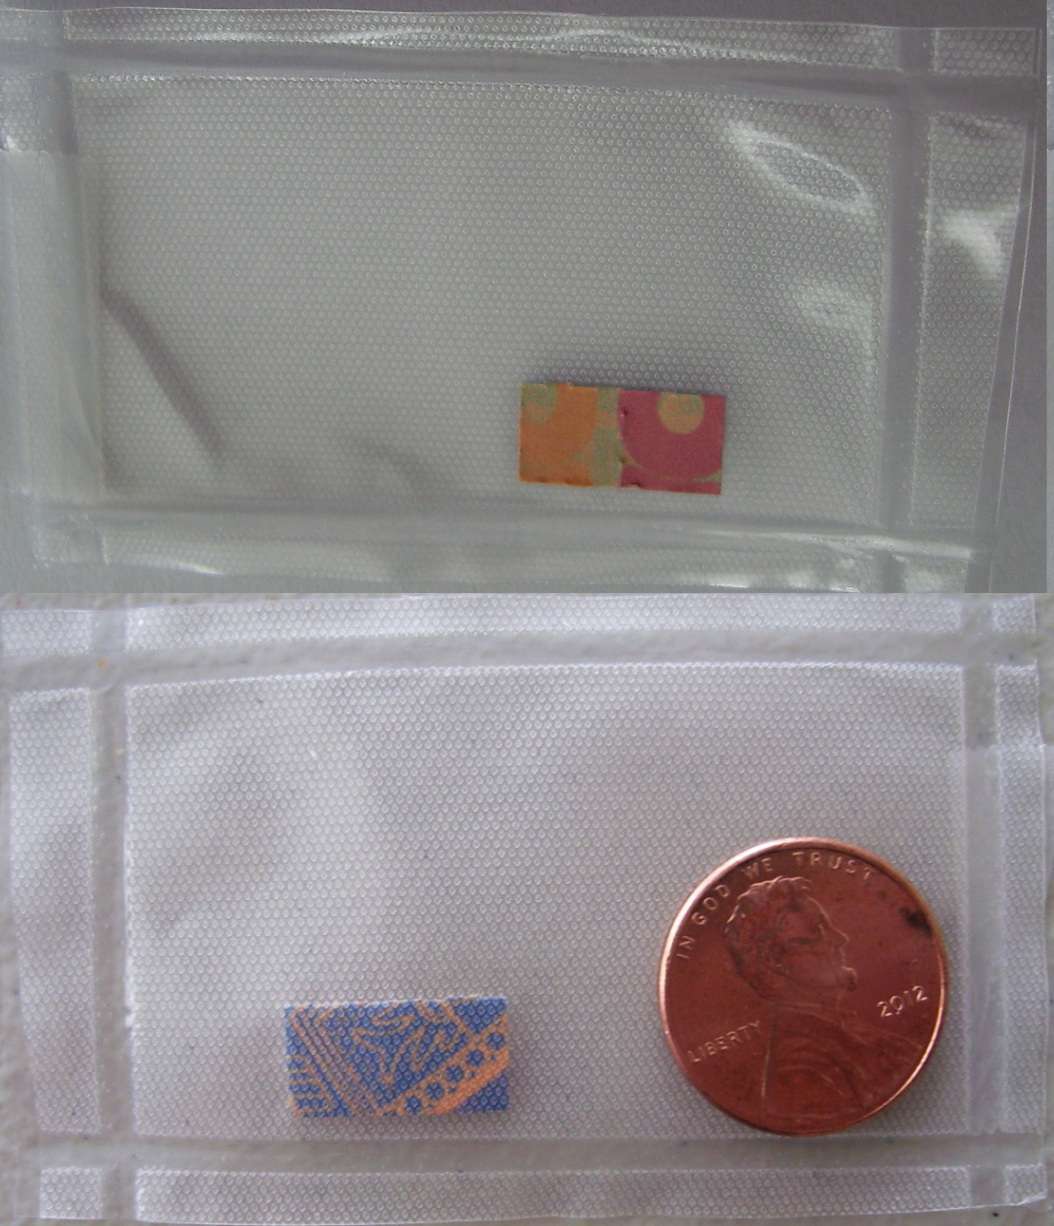 2 250μg doses of LSD on “Mayan” blotter paper, shipped from Germany in a sealed plastic sheet